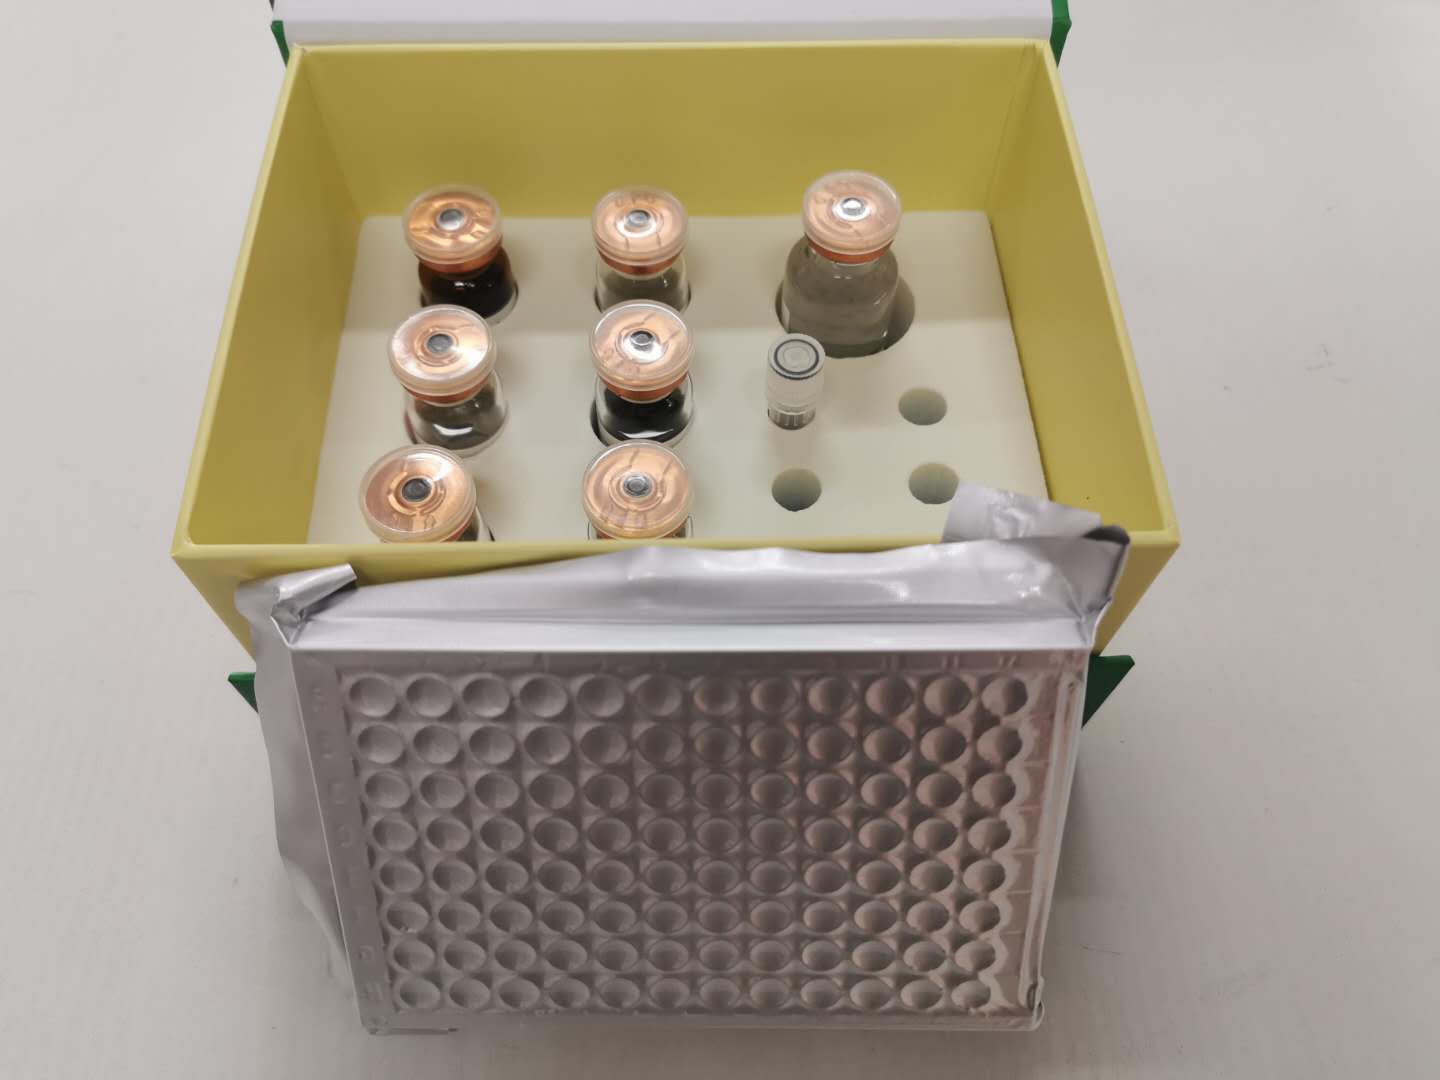 过氧化氢酶酶联免疫试剂盒提供实验数据